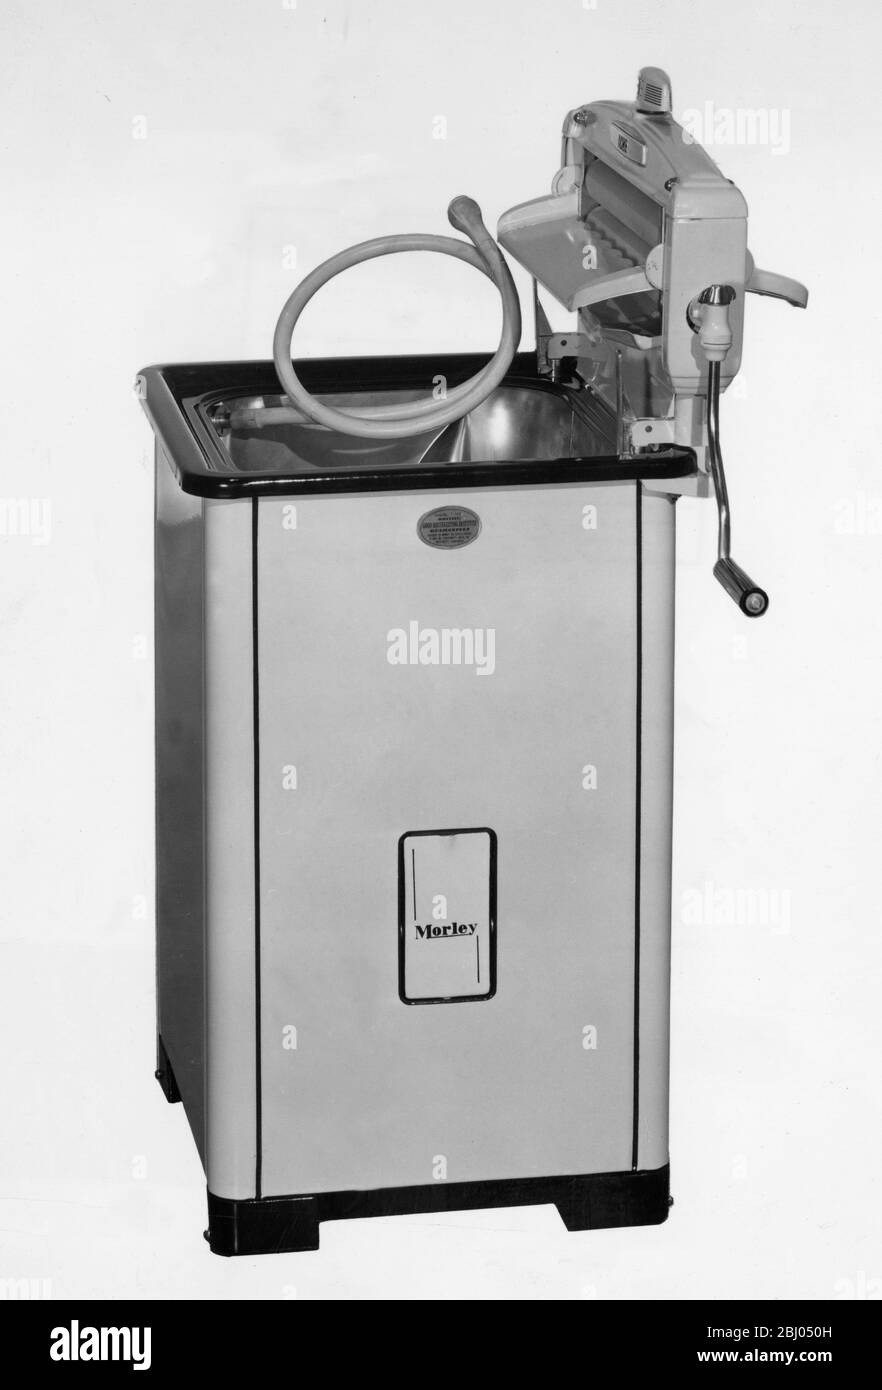 Morley - lavadora eléctrica/a gas - Foto de stock